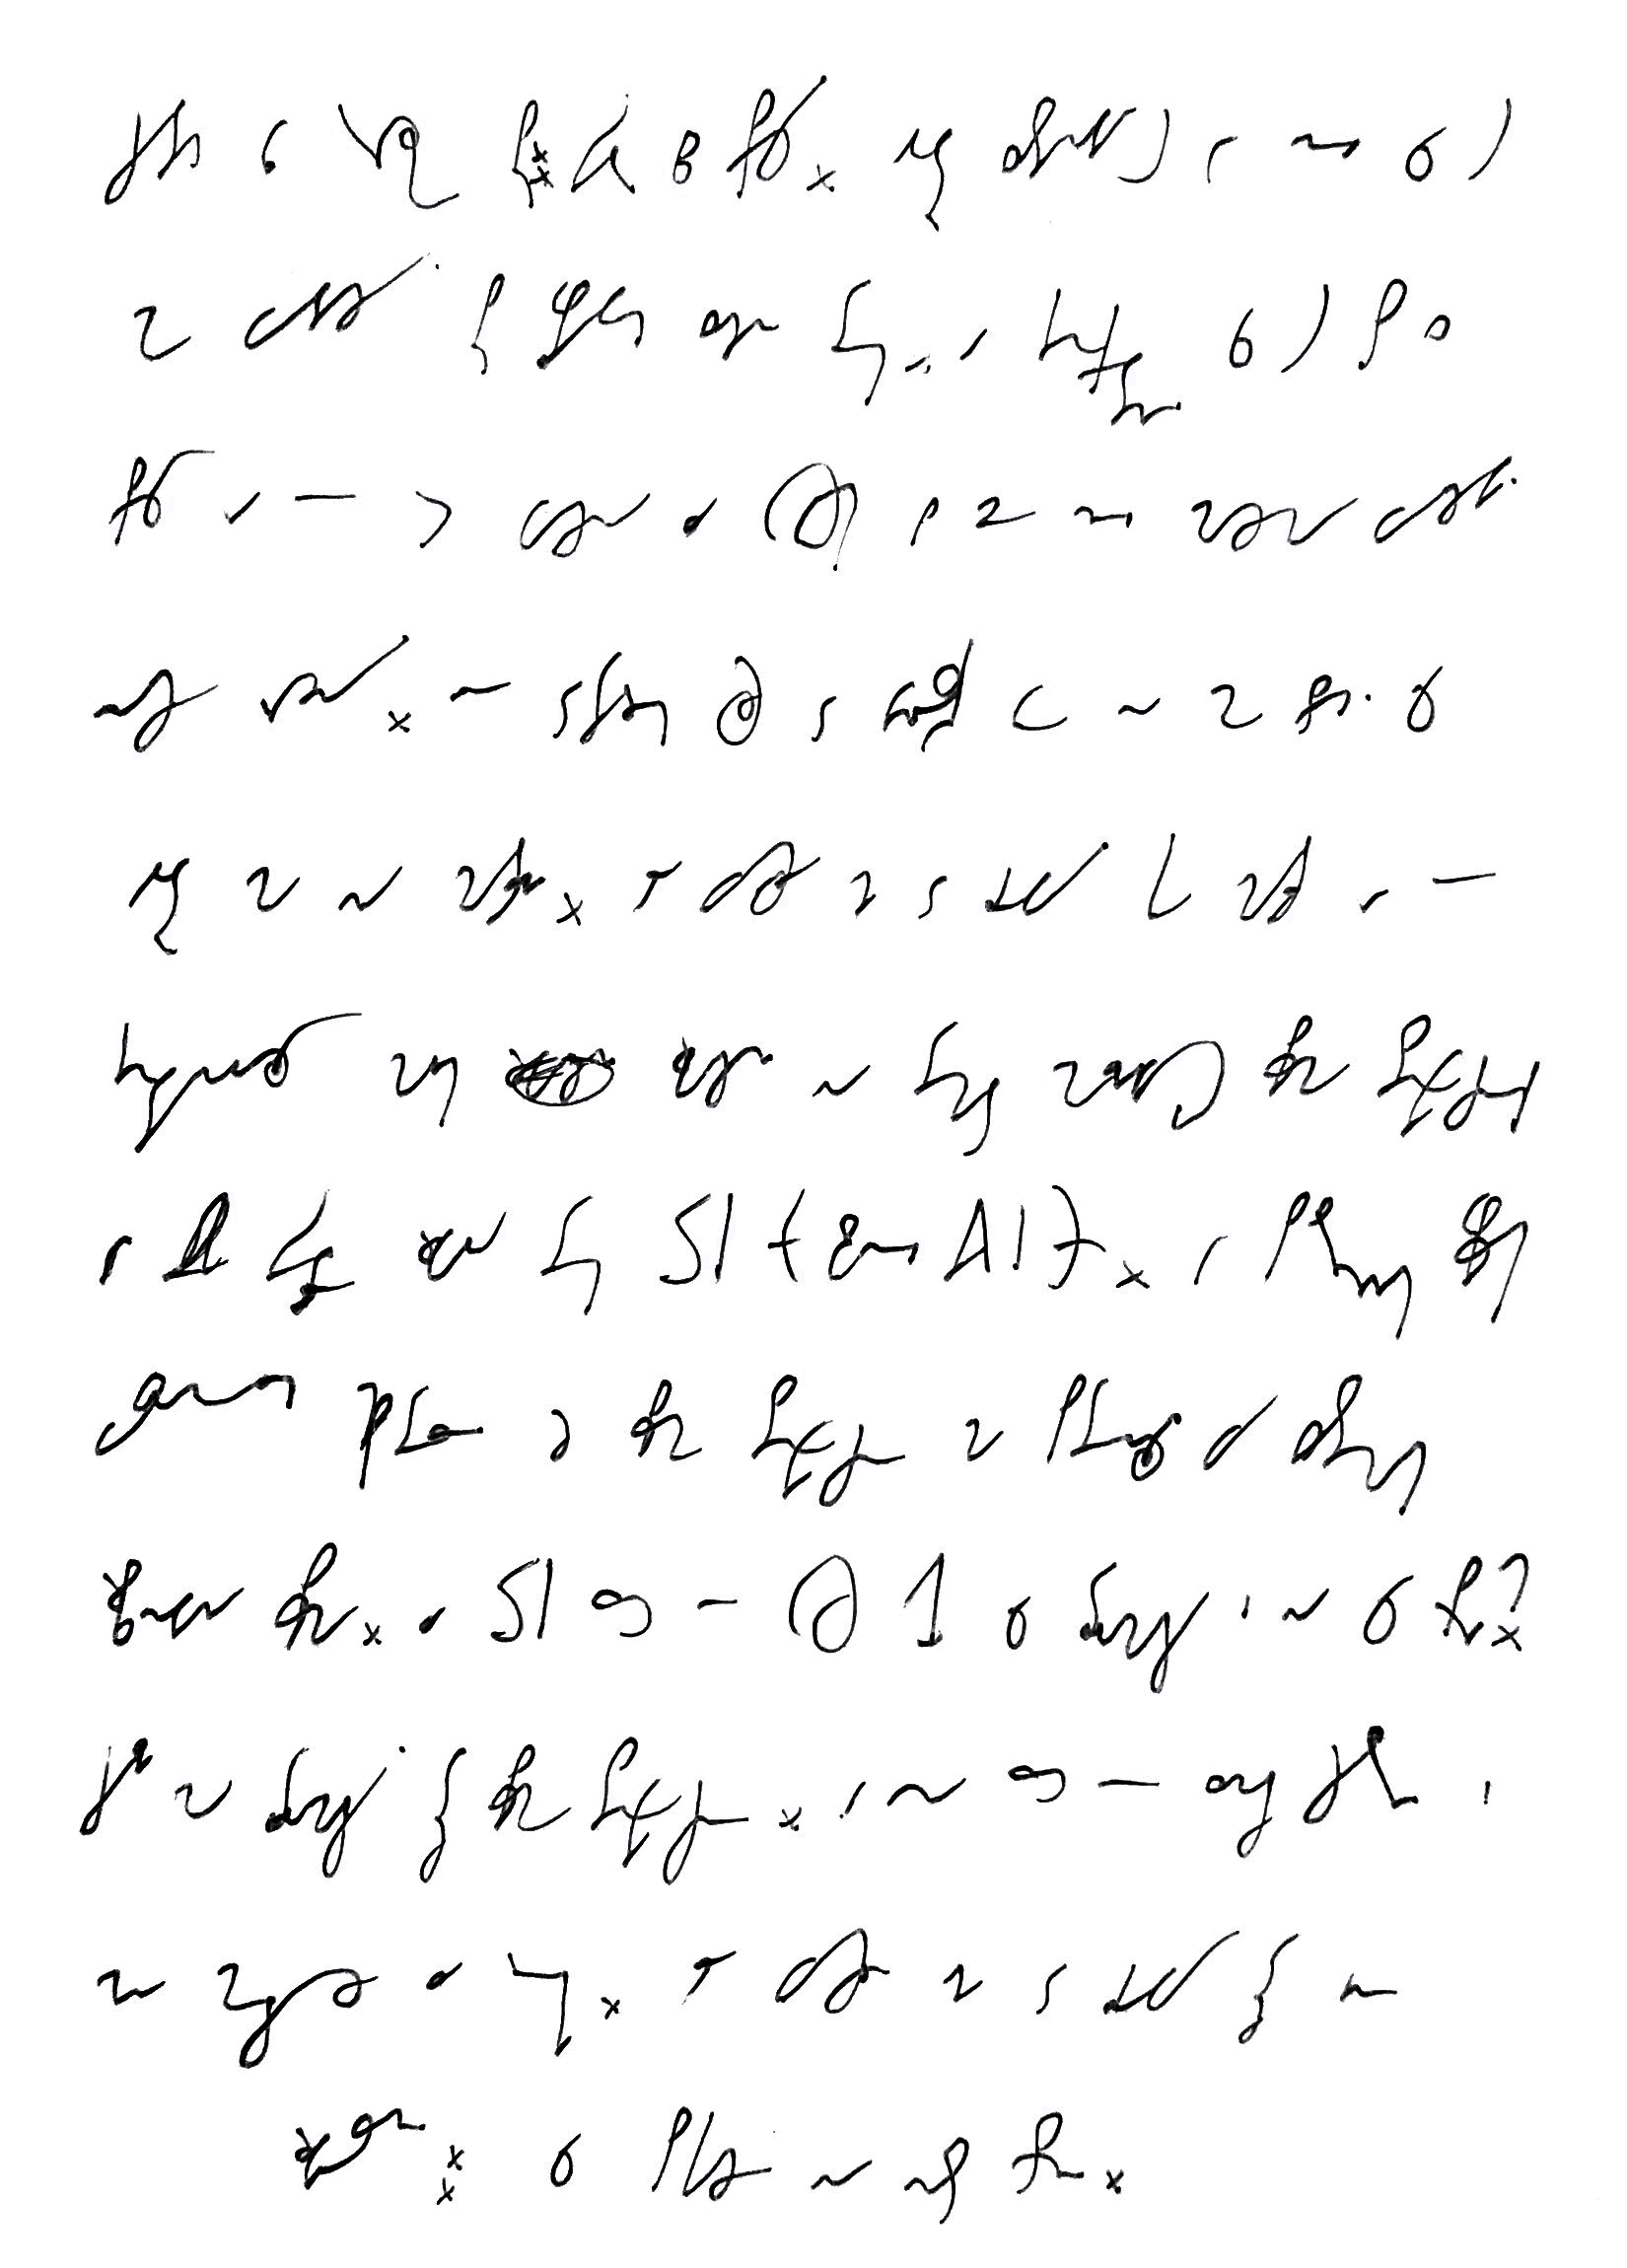 Pierwsza kartka wpisu zapisana pismem stenograficznym, tłumaczenie w tekście wpisu